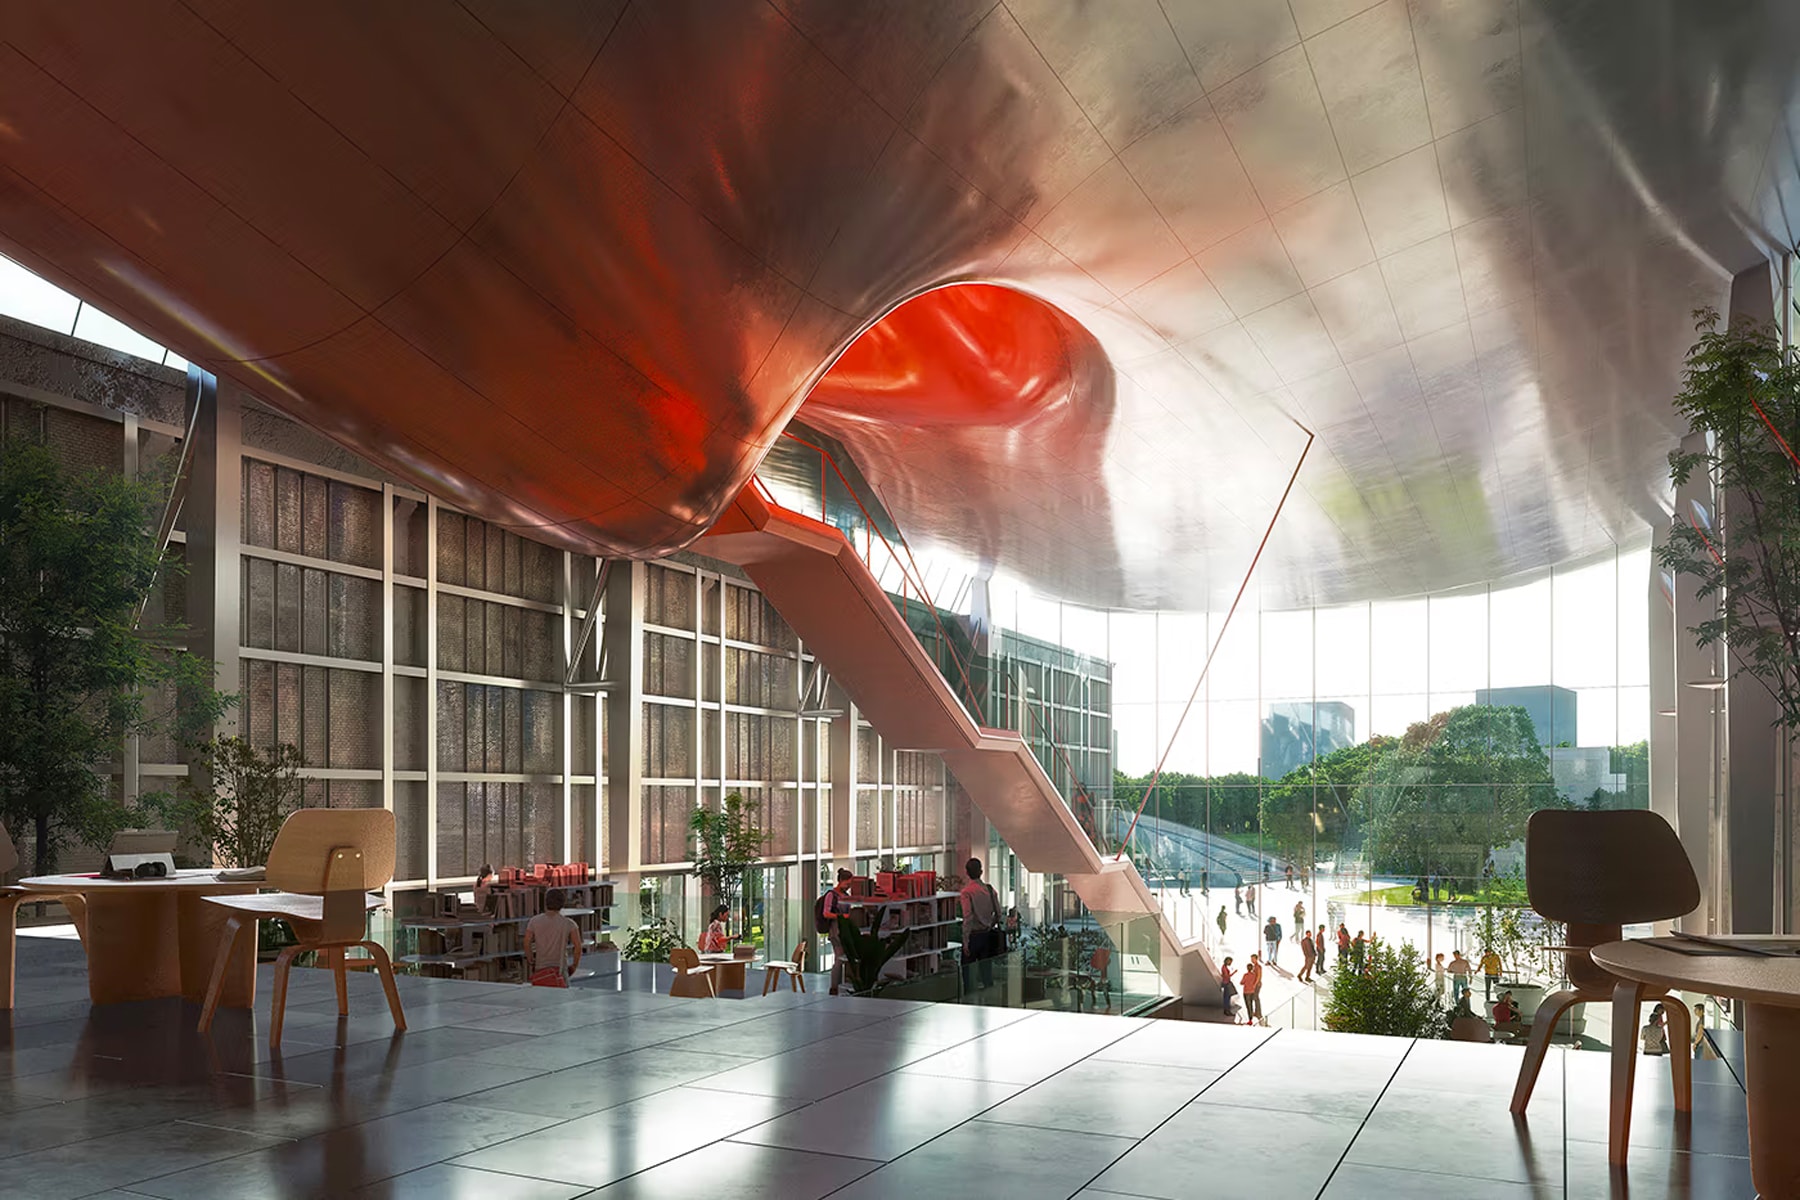 北京建築事務所 MAD 設想於工廠頂部建造未來風格漂浮方舟